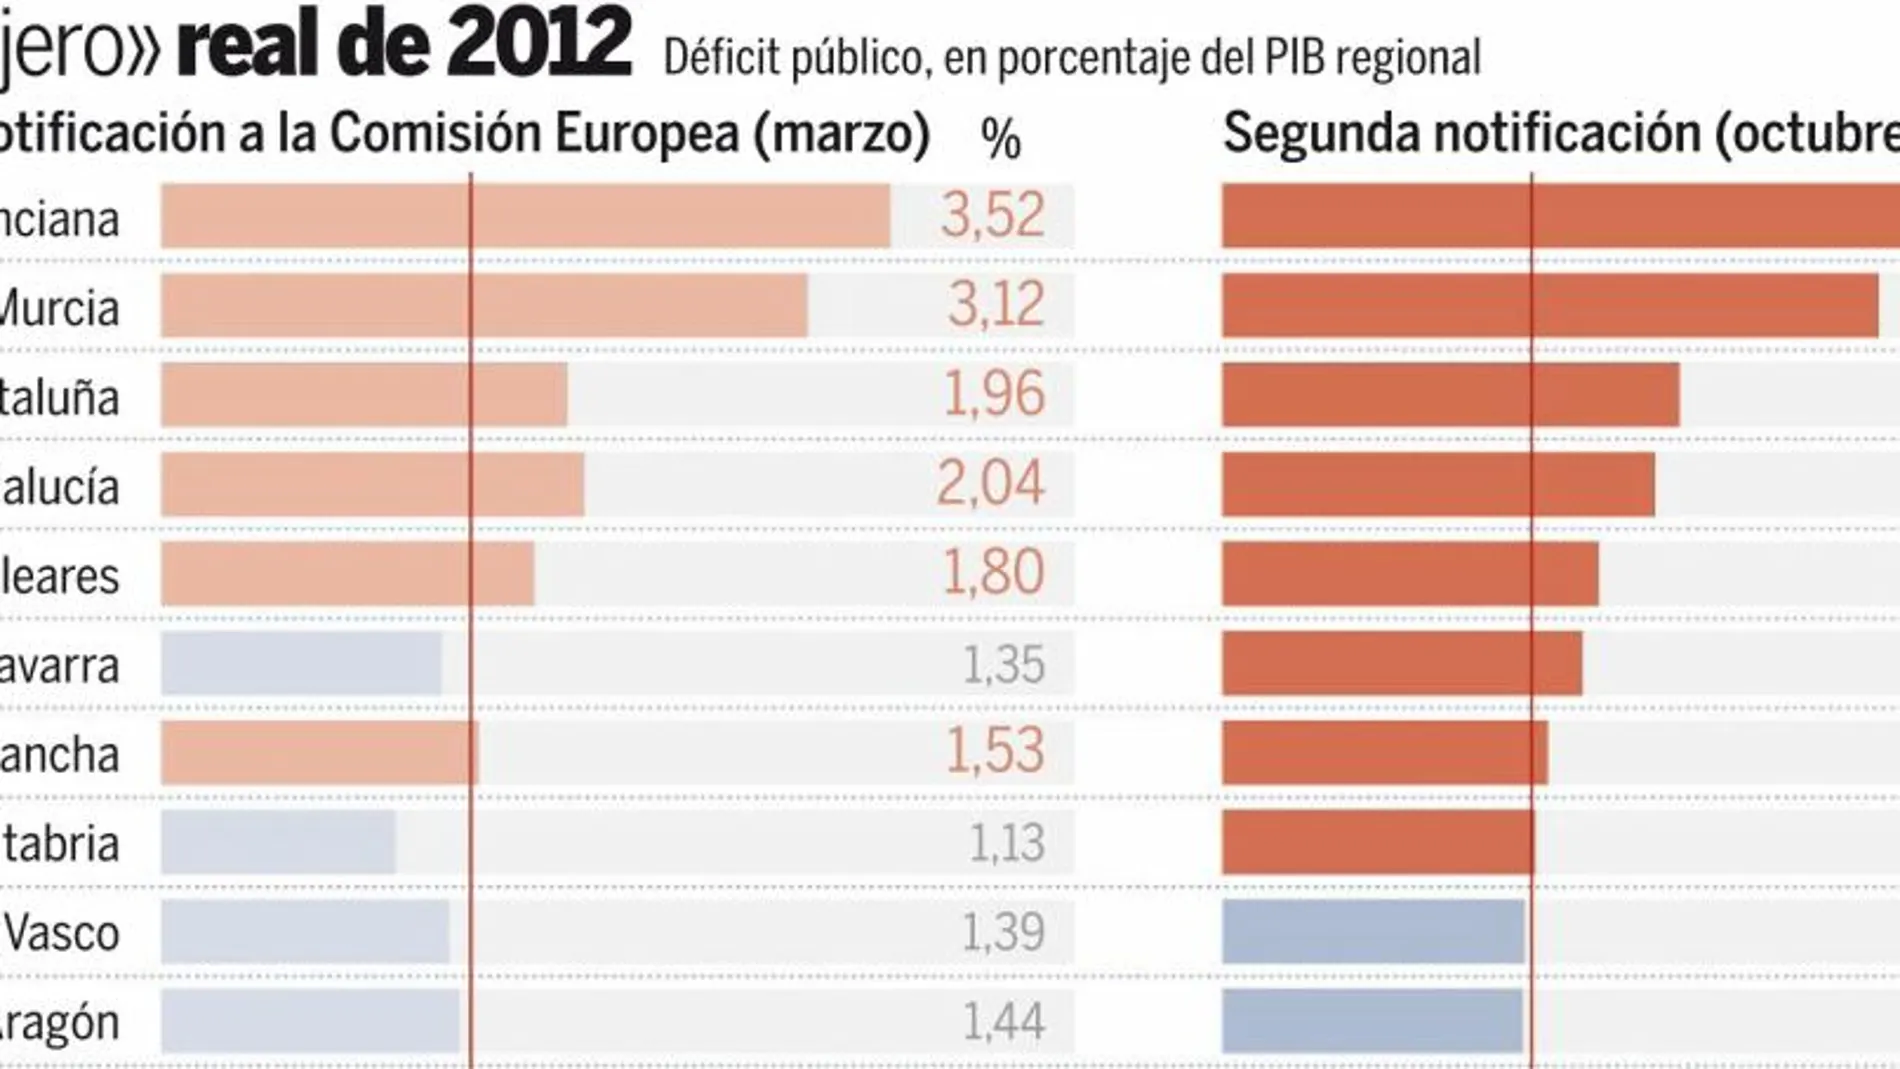 Navarra, Castilla-La Mancha y Cantabria tampoco cumplieron el déficit en 2012